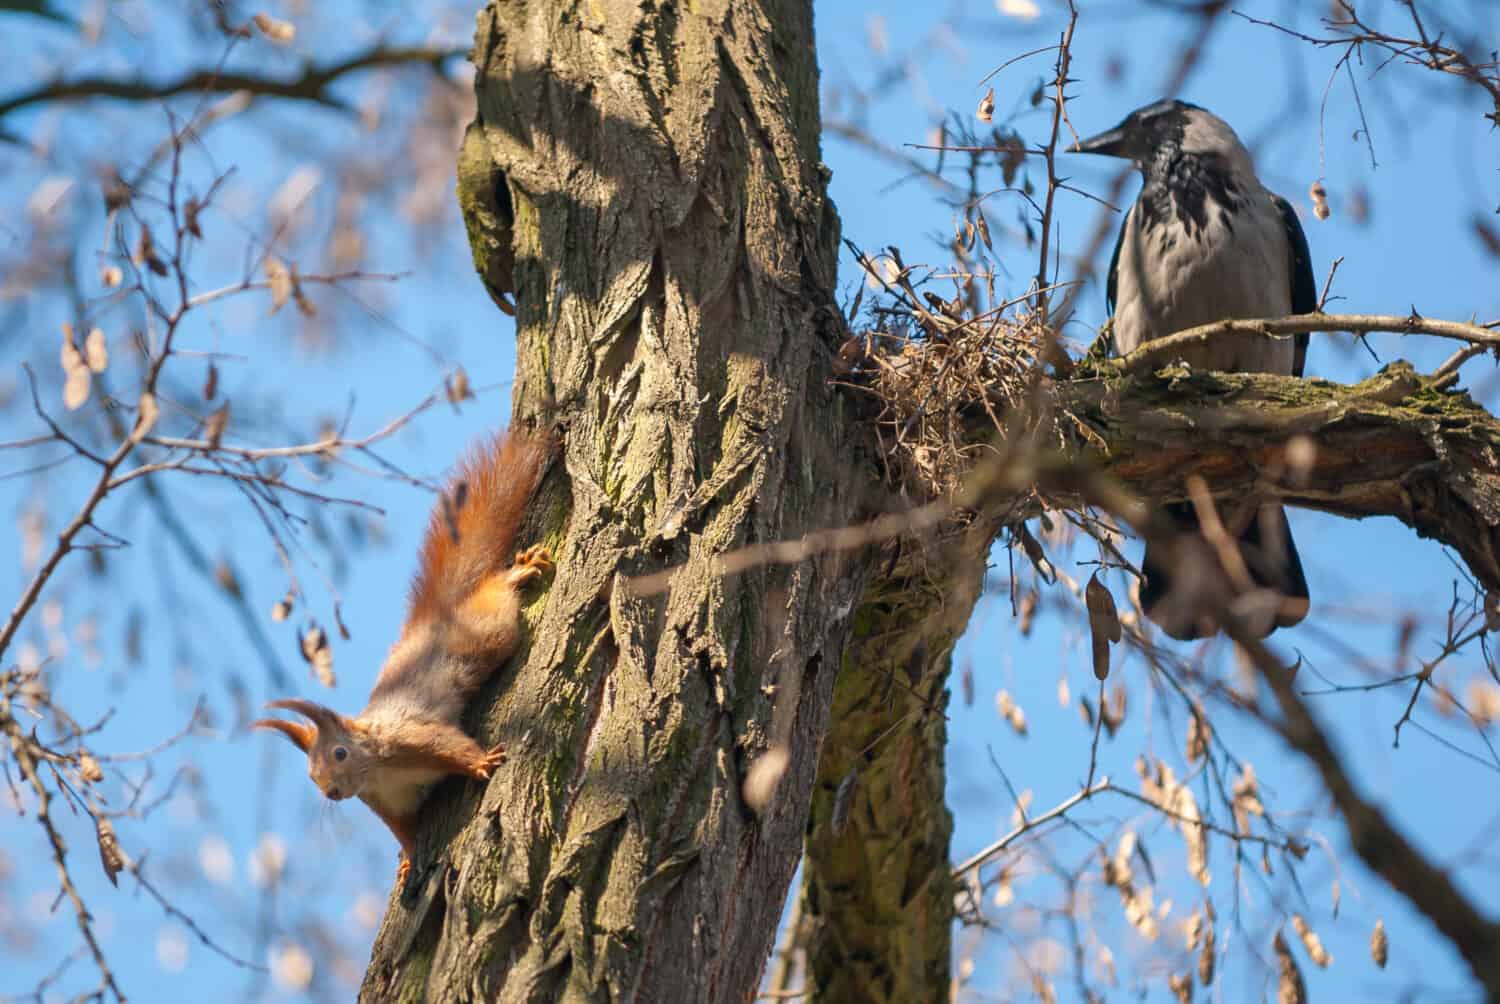 Uno scoiattolo e un corvo seduto su un albero, con un cielo azzurro sullo sfondo